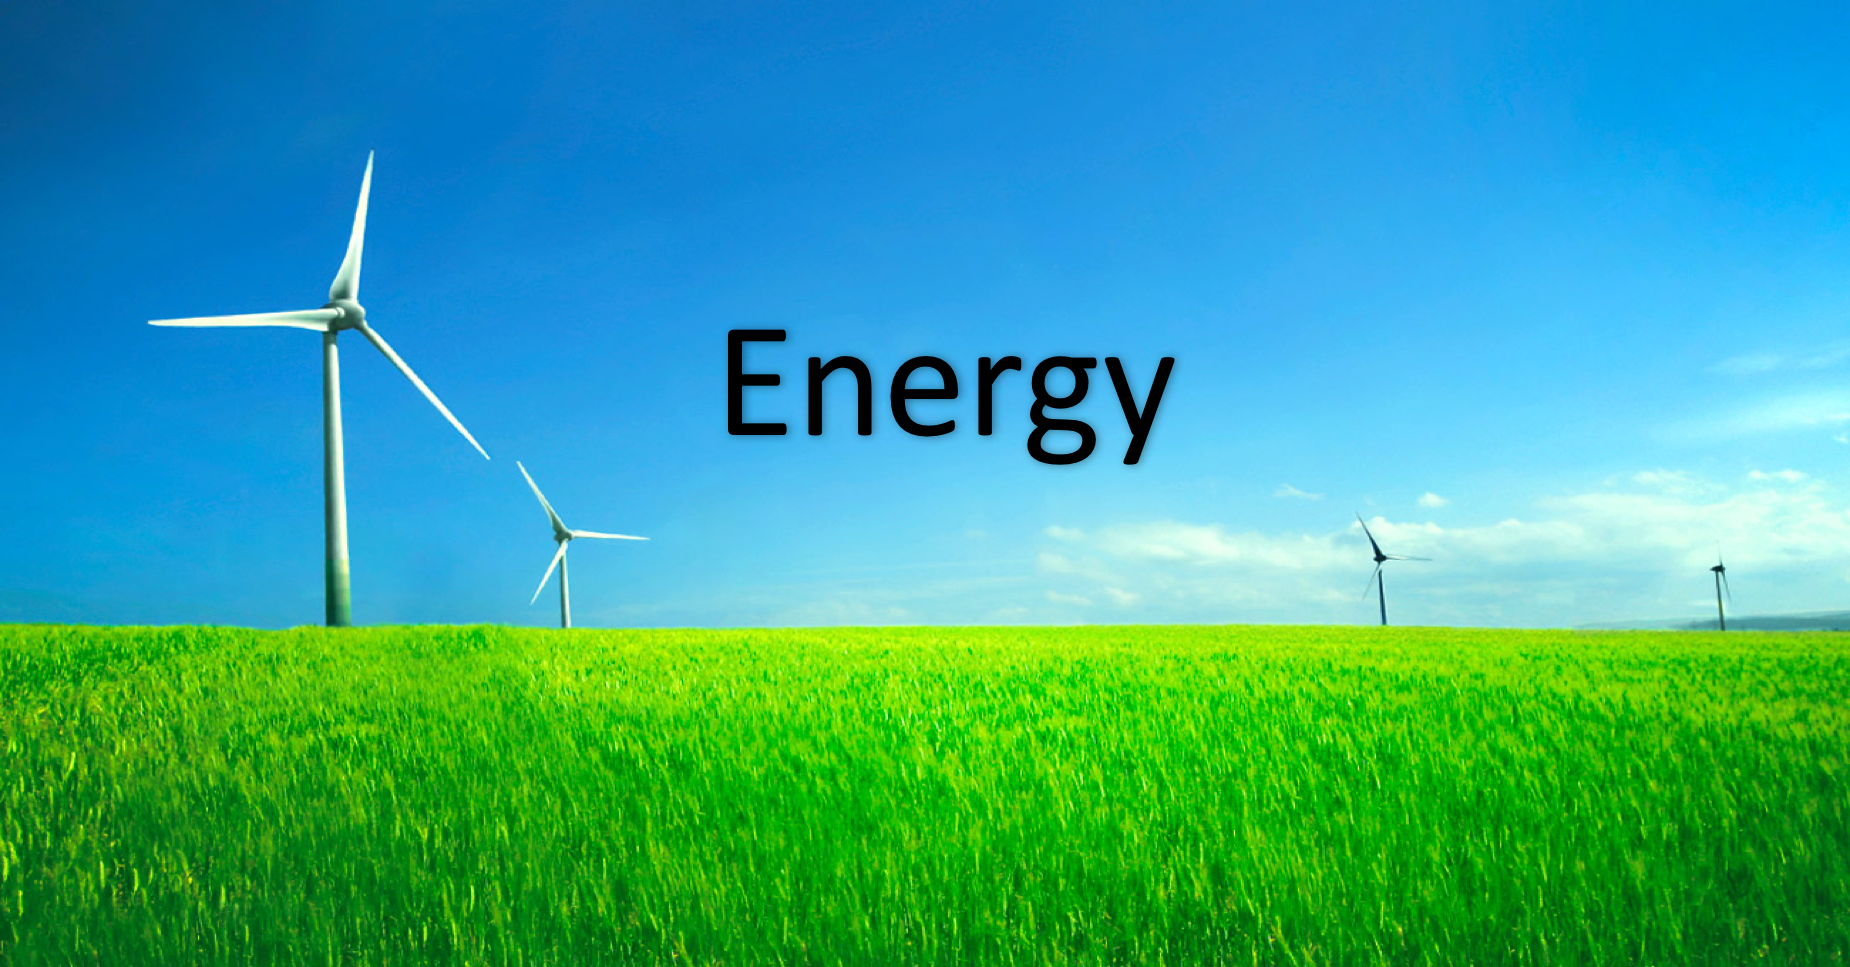 Energy – Global Energy Engineering